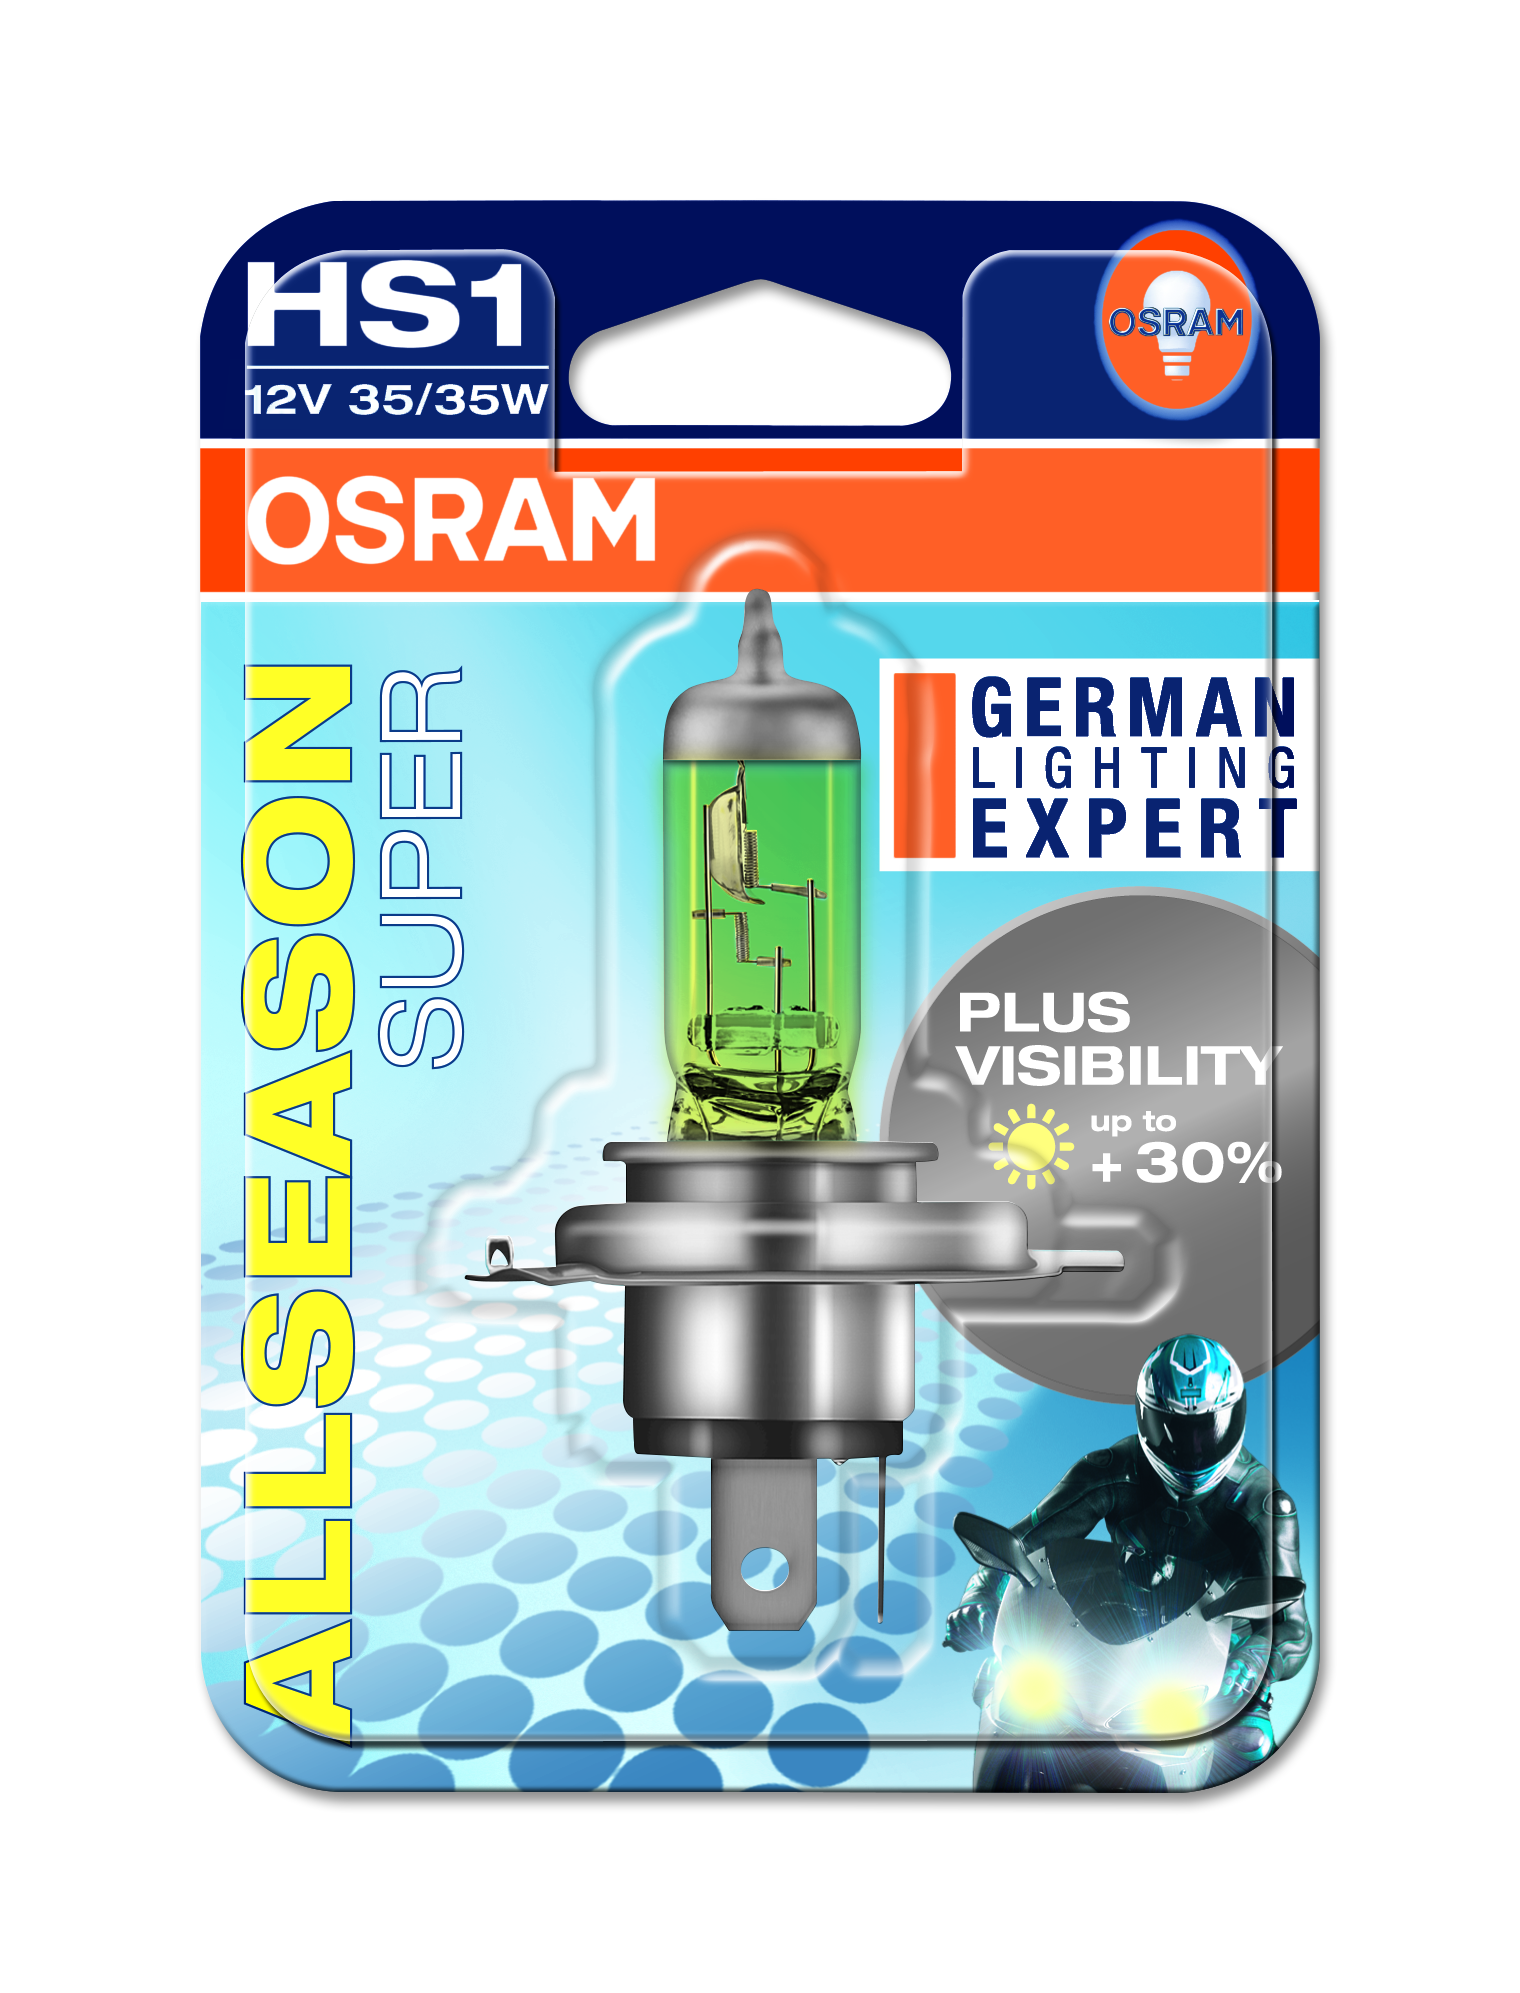 Osram HS1 12V 35/35W (64185SVS) ab € 2,14